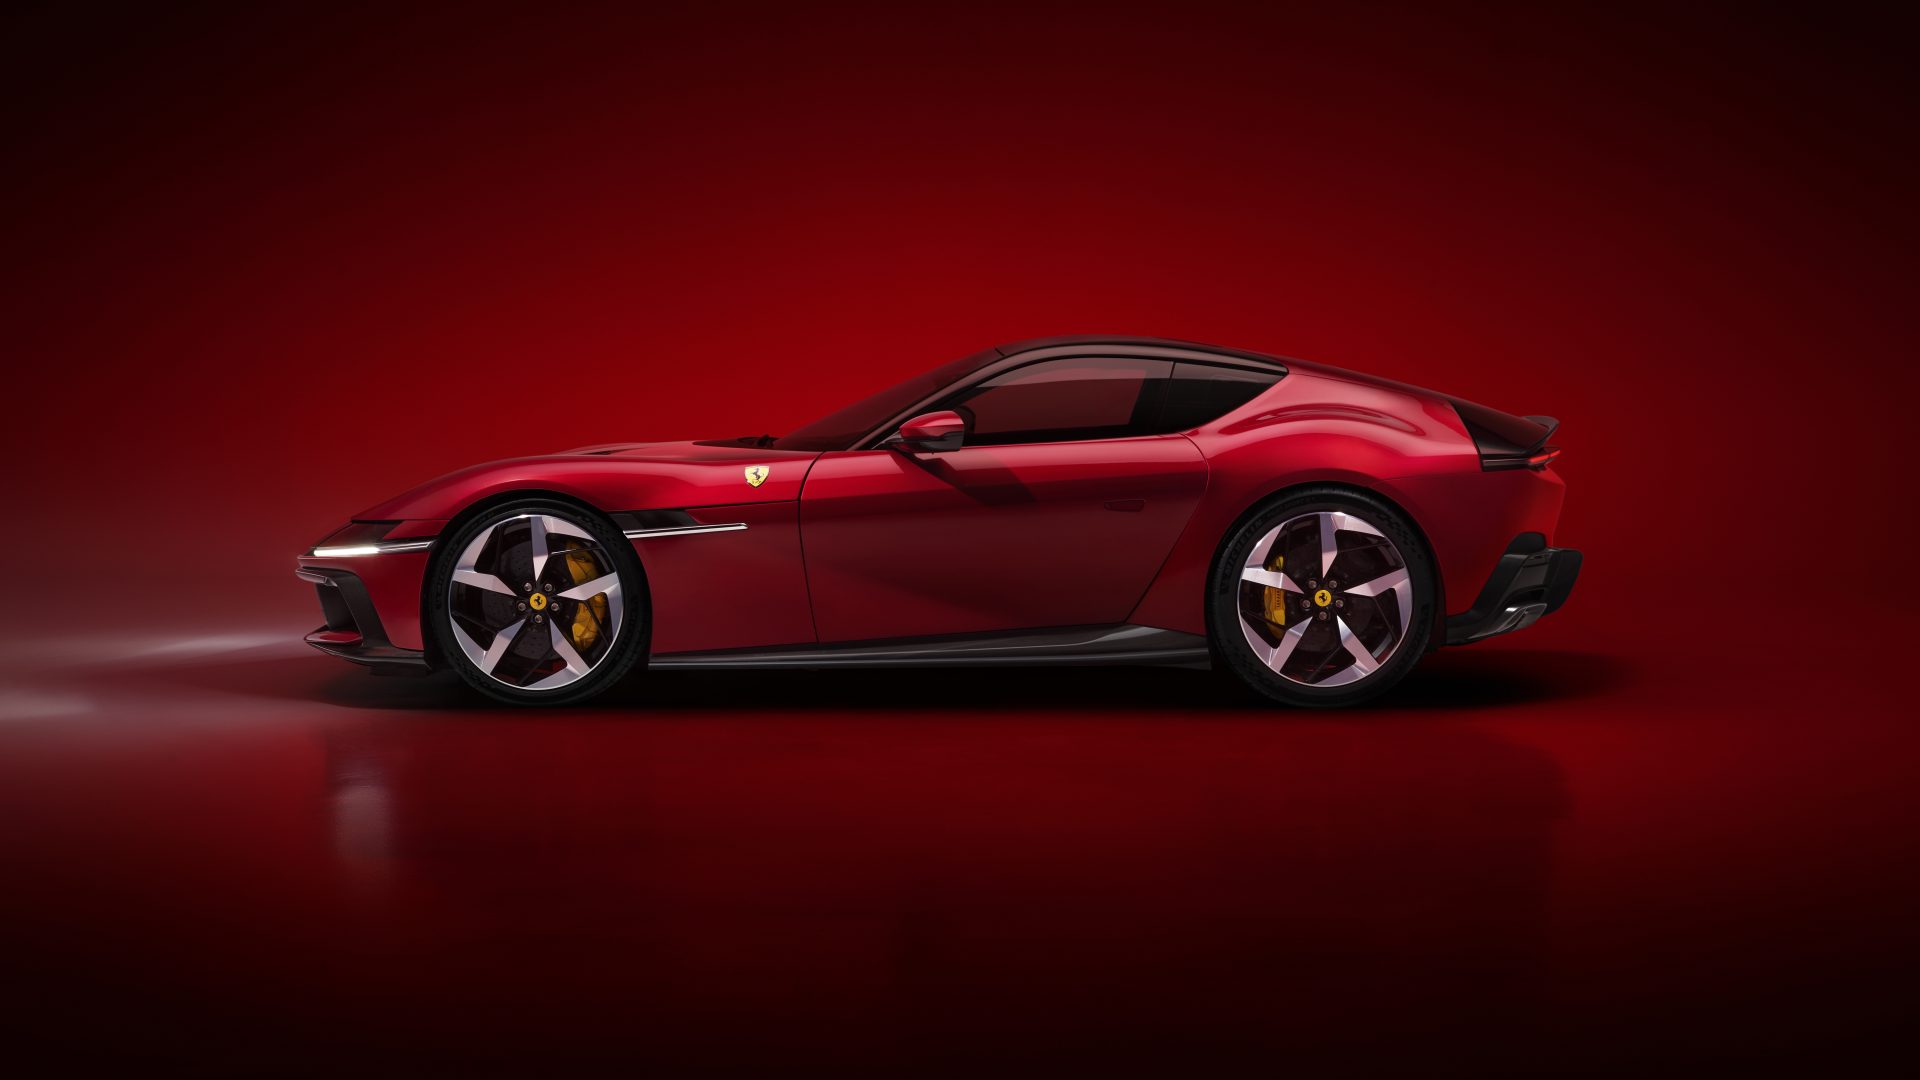 New Ferrari V12 ext 03 red media d0c6a3e6 4d73 4e52 9e3d 36b1b538bbdc Ferrari 12Cilindri : Μια σύγχρονη Daytona